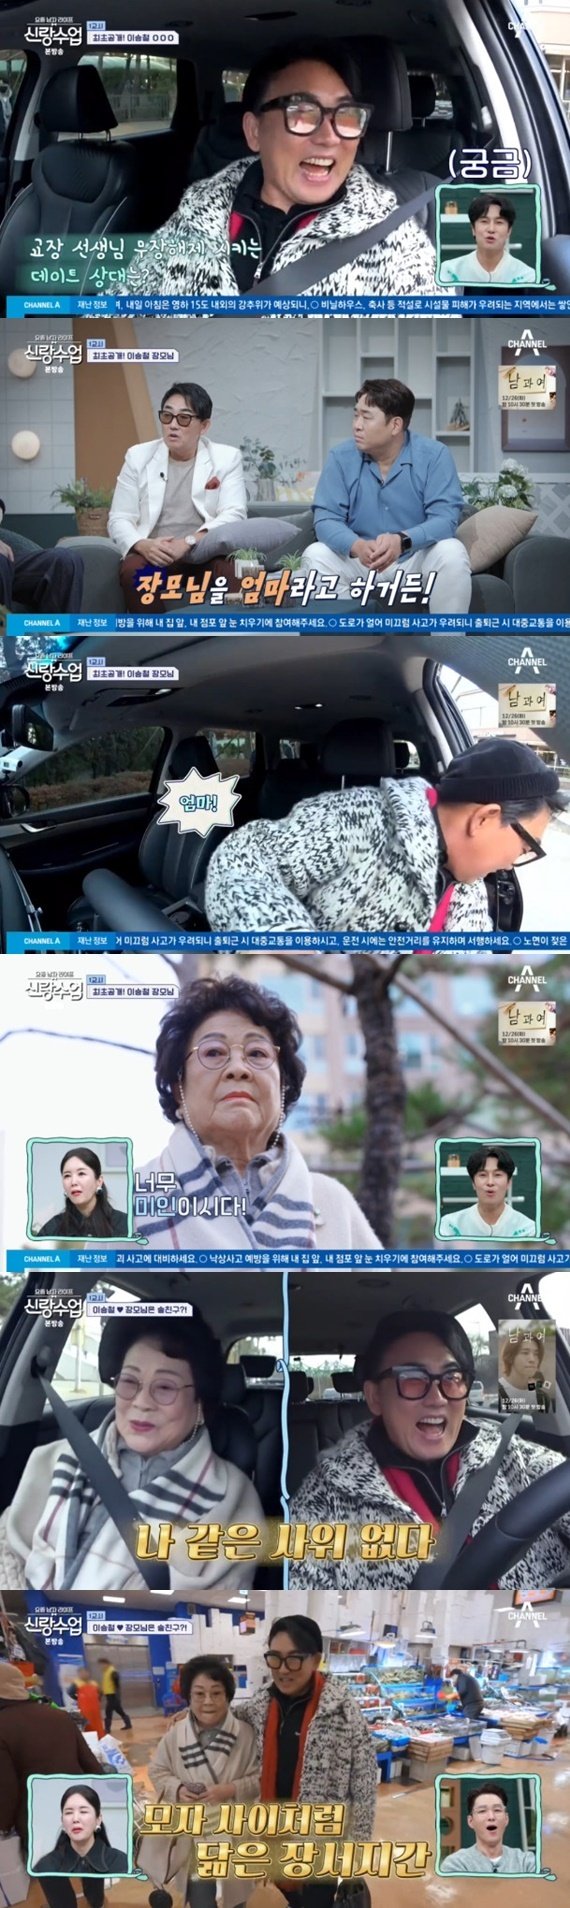 이승철, 엄마 같은 장모님 최초 공개…돈독한 장서지간